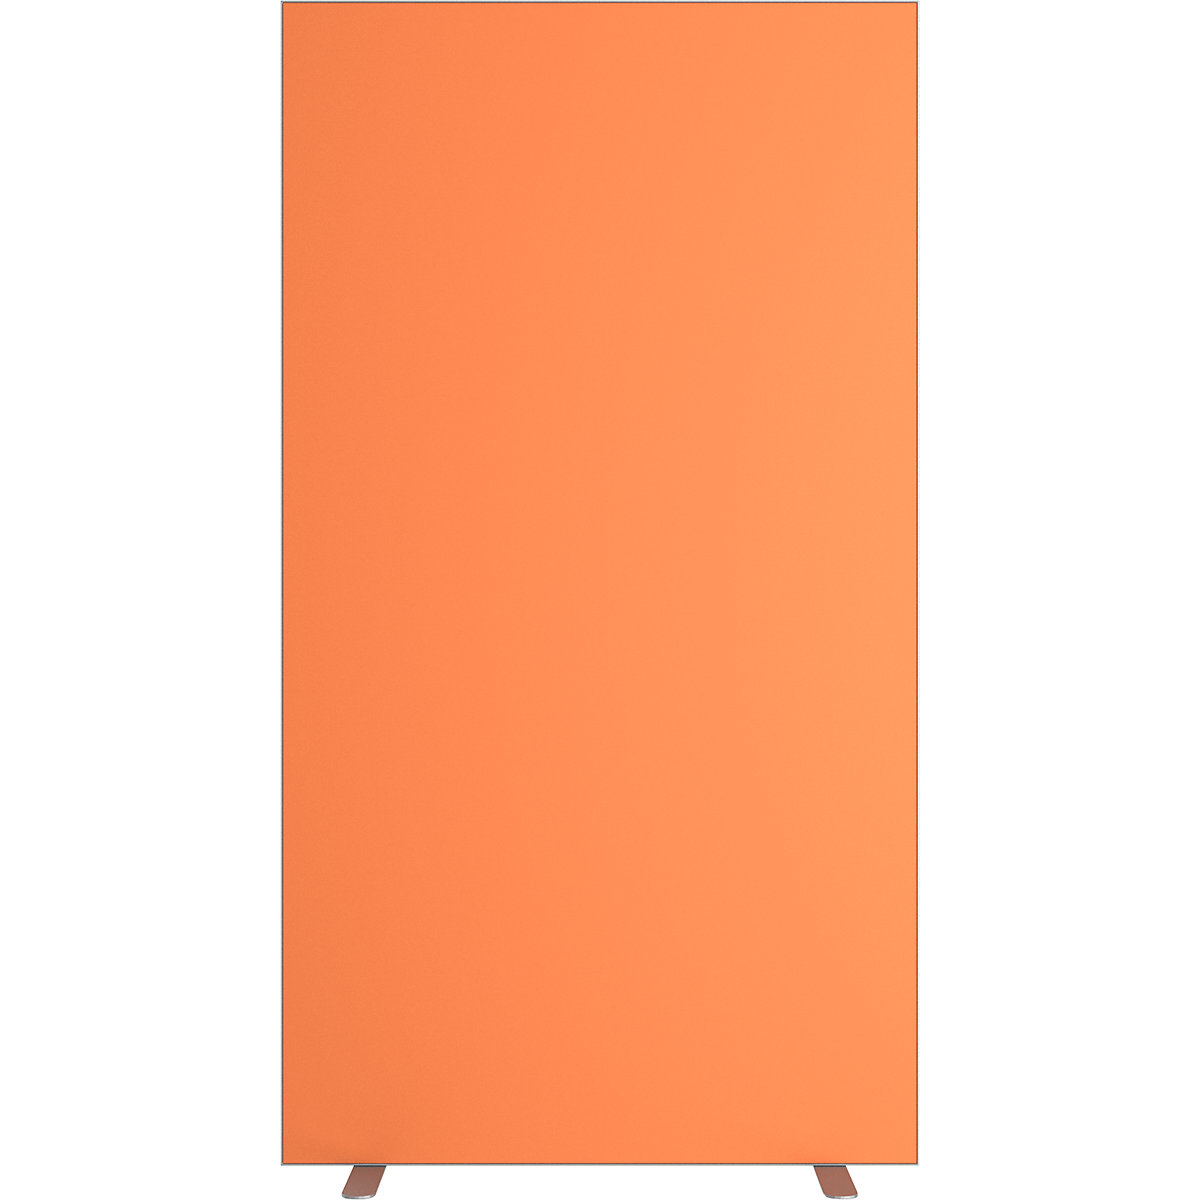 Pared separadora easyScreen, monocolor, con aislamiento acústico, naranja, anchura 940 mm-12